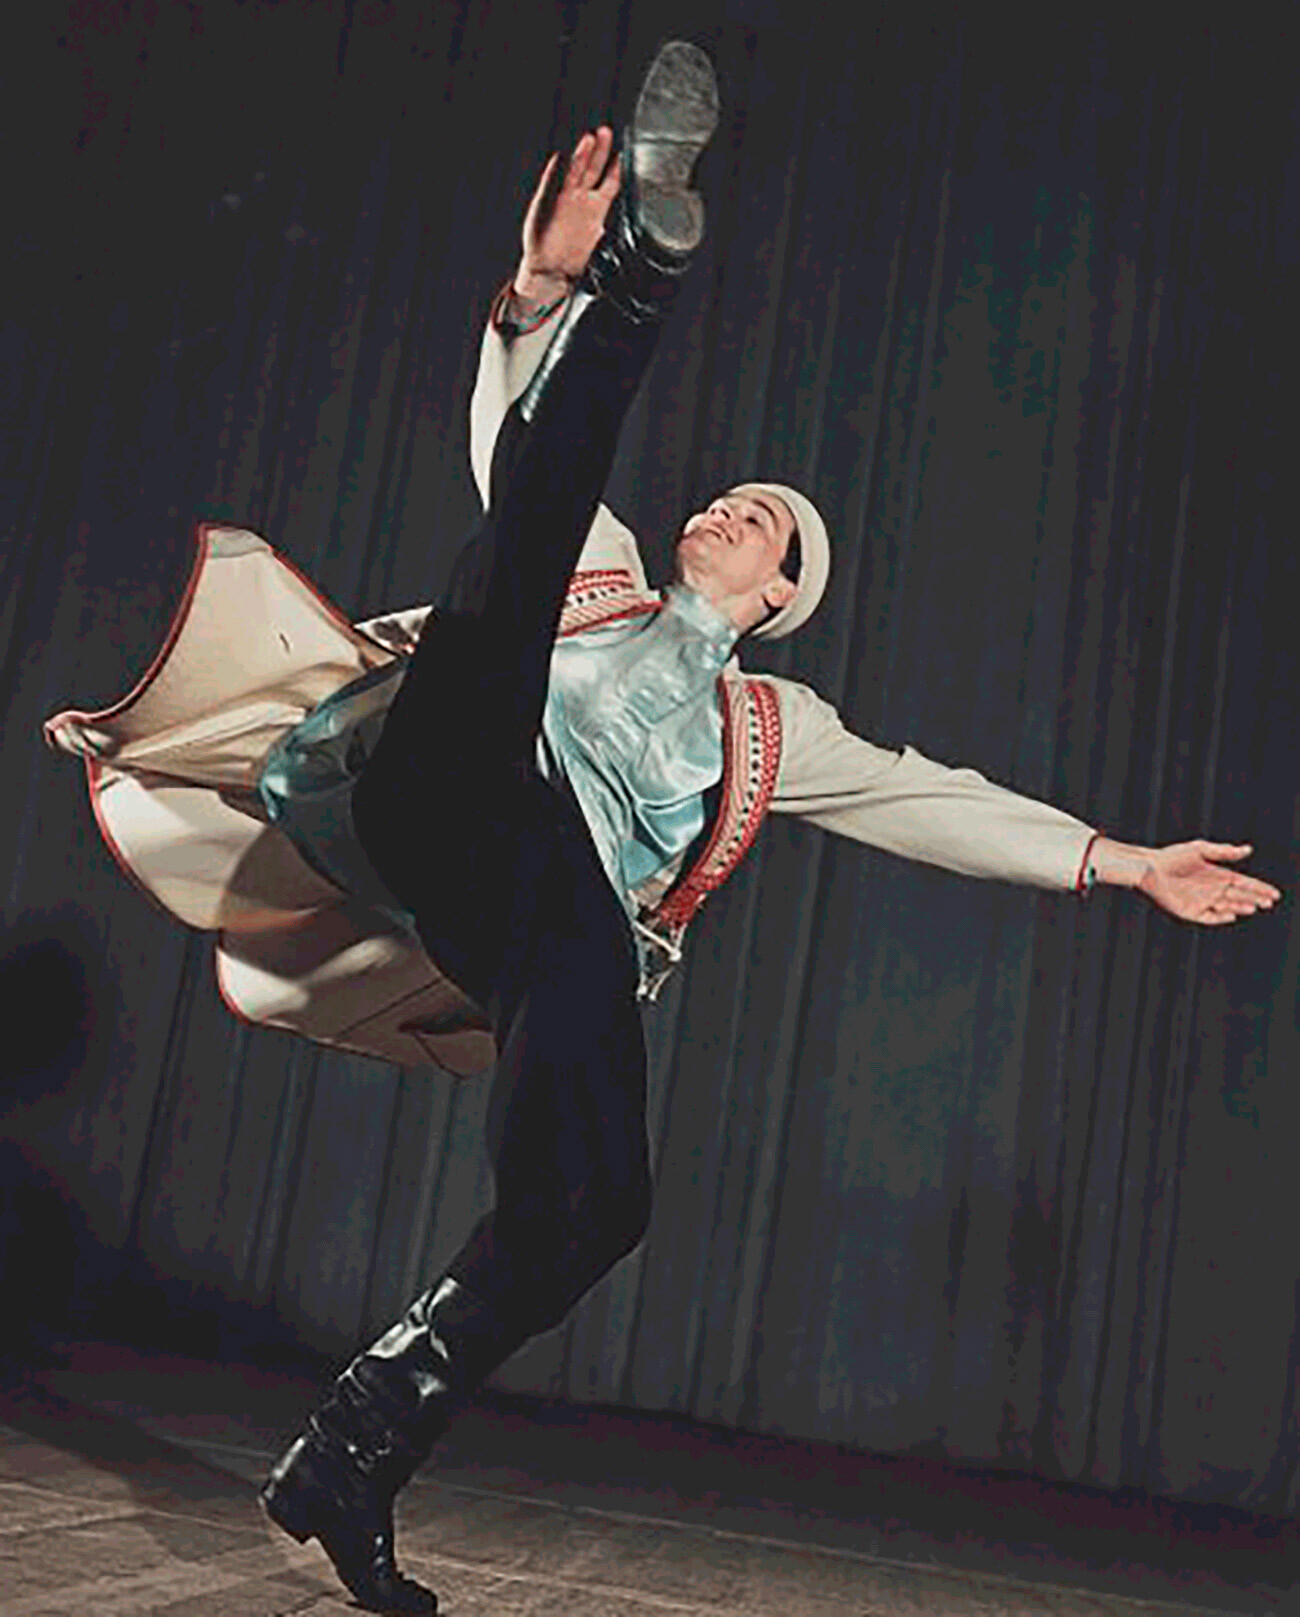 El famoso bailarín Lev Golovanov interpretando una danza rusa

